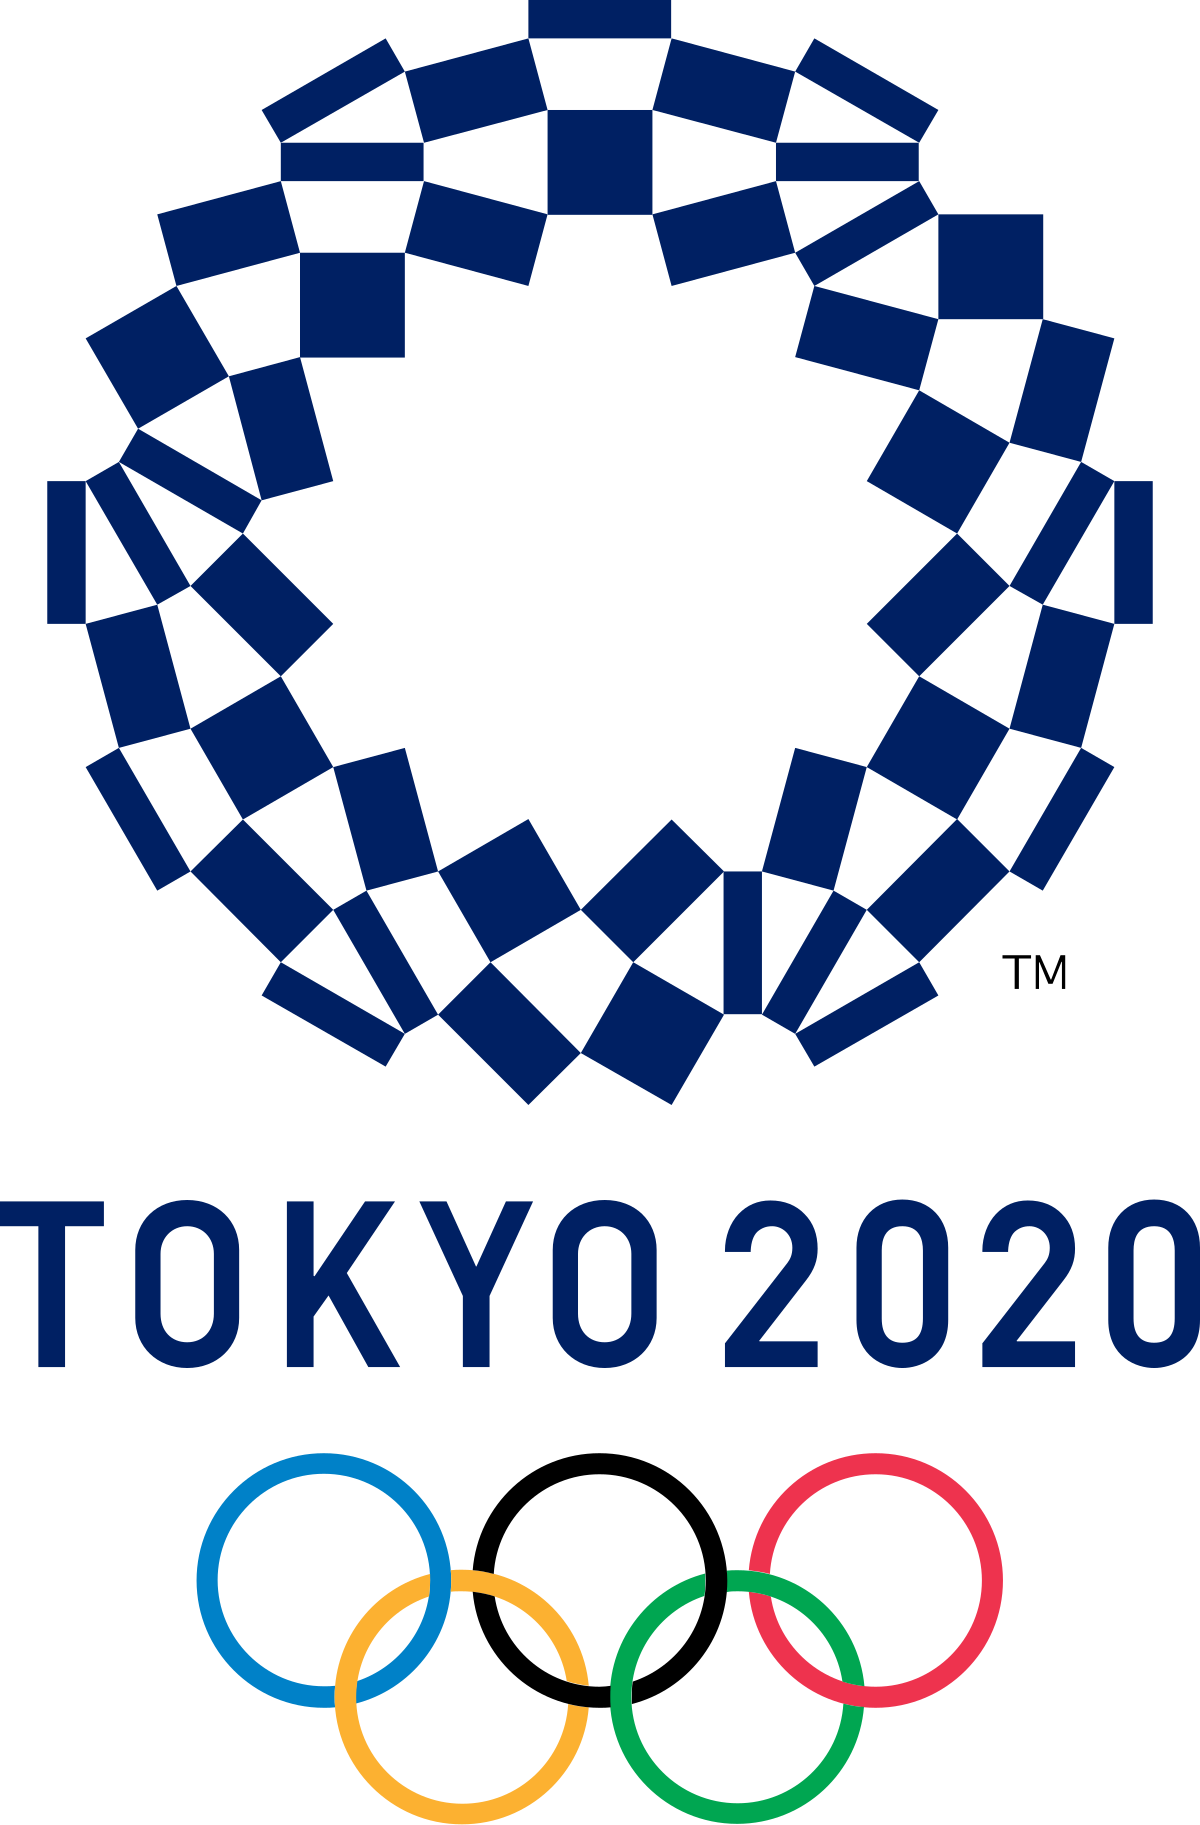 Giochi della XXXII Olimpiade - Wikipedia tokyo 2020